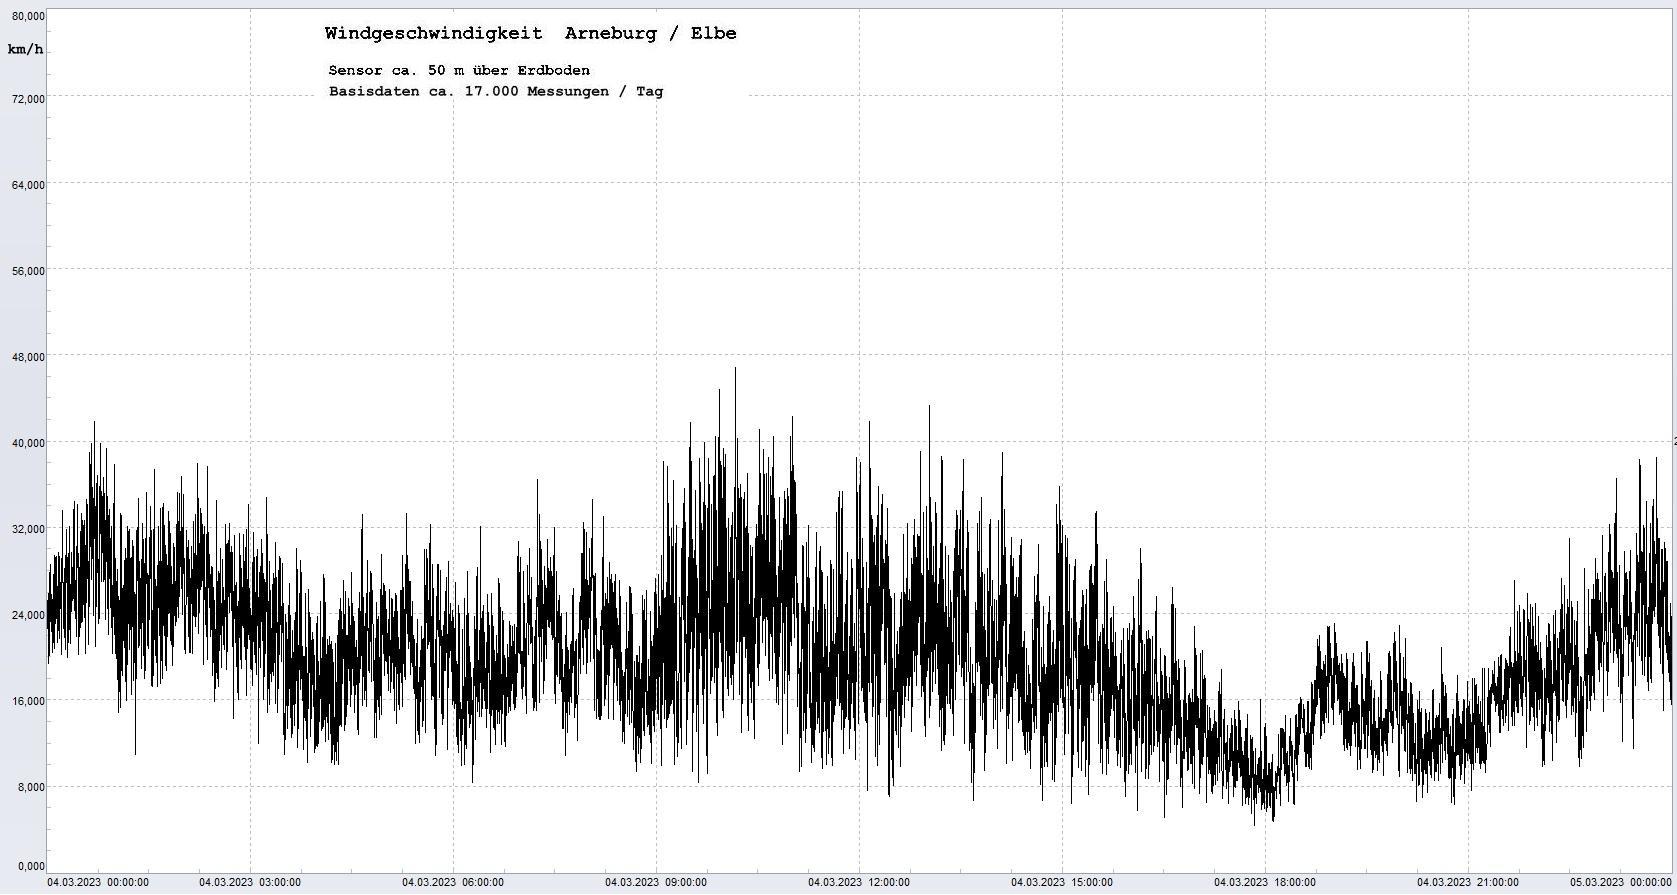 Arneburg Tages-Diagramm Winddaten, 04.03.2023
  Diagramm, Sensor auf Gebäude, ca. 50 m über Erdboden, Basis: 5s-Aufzeichnung